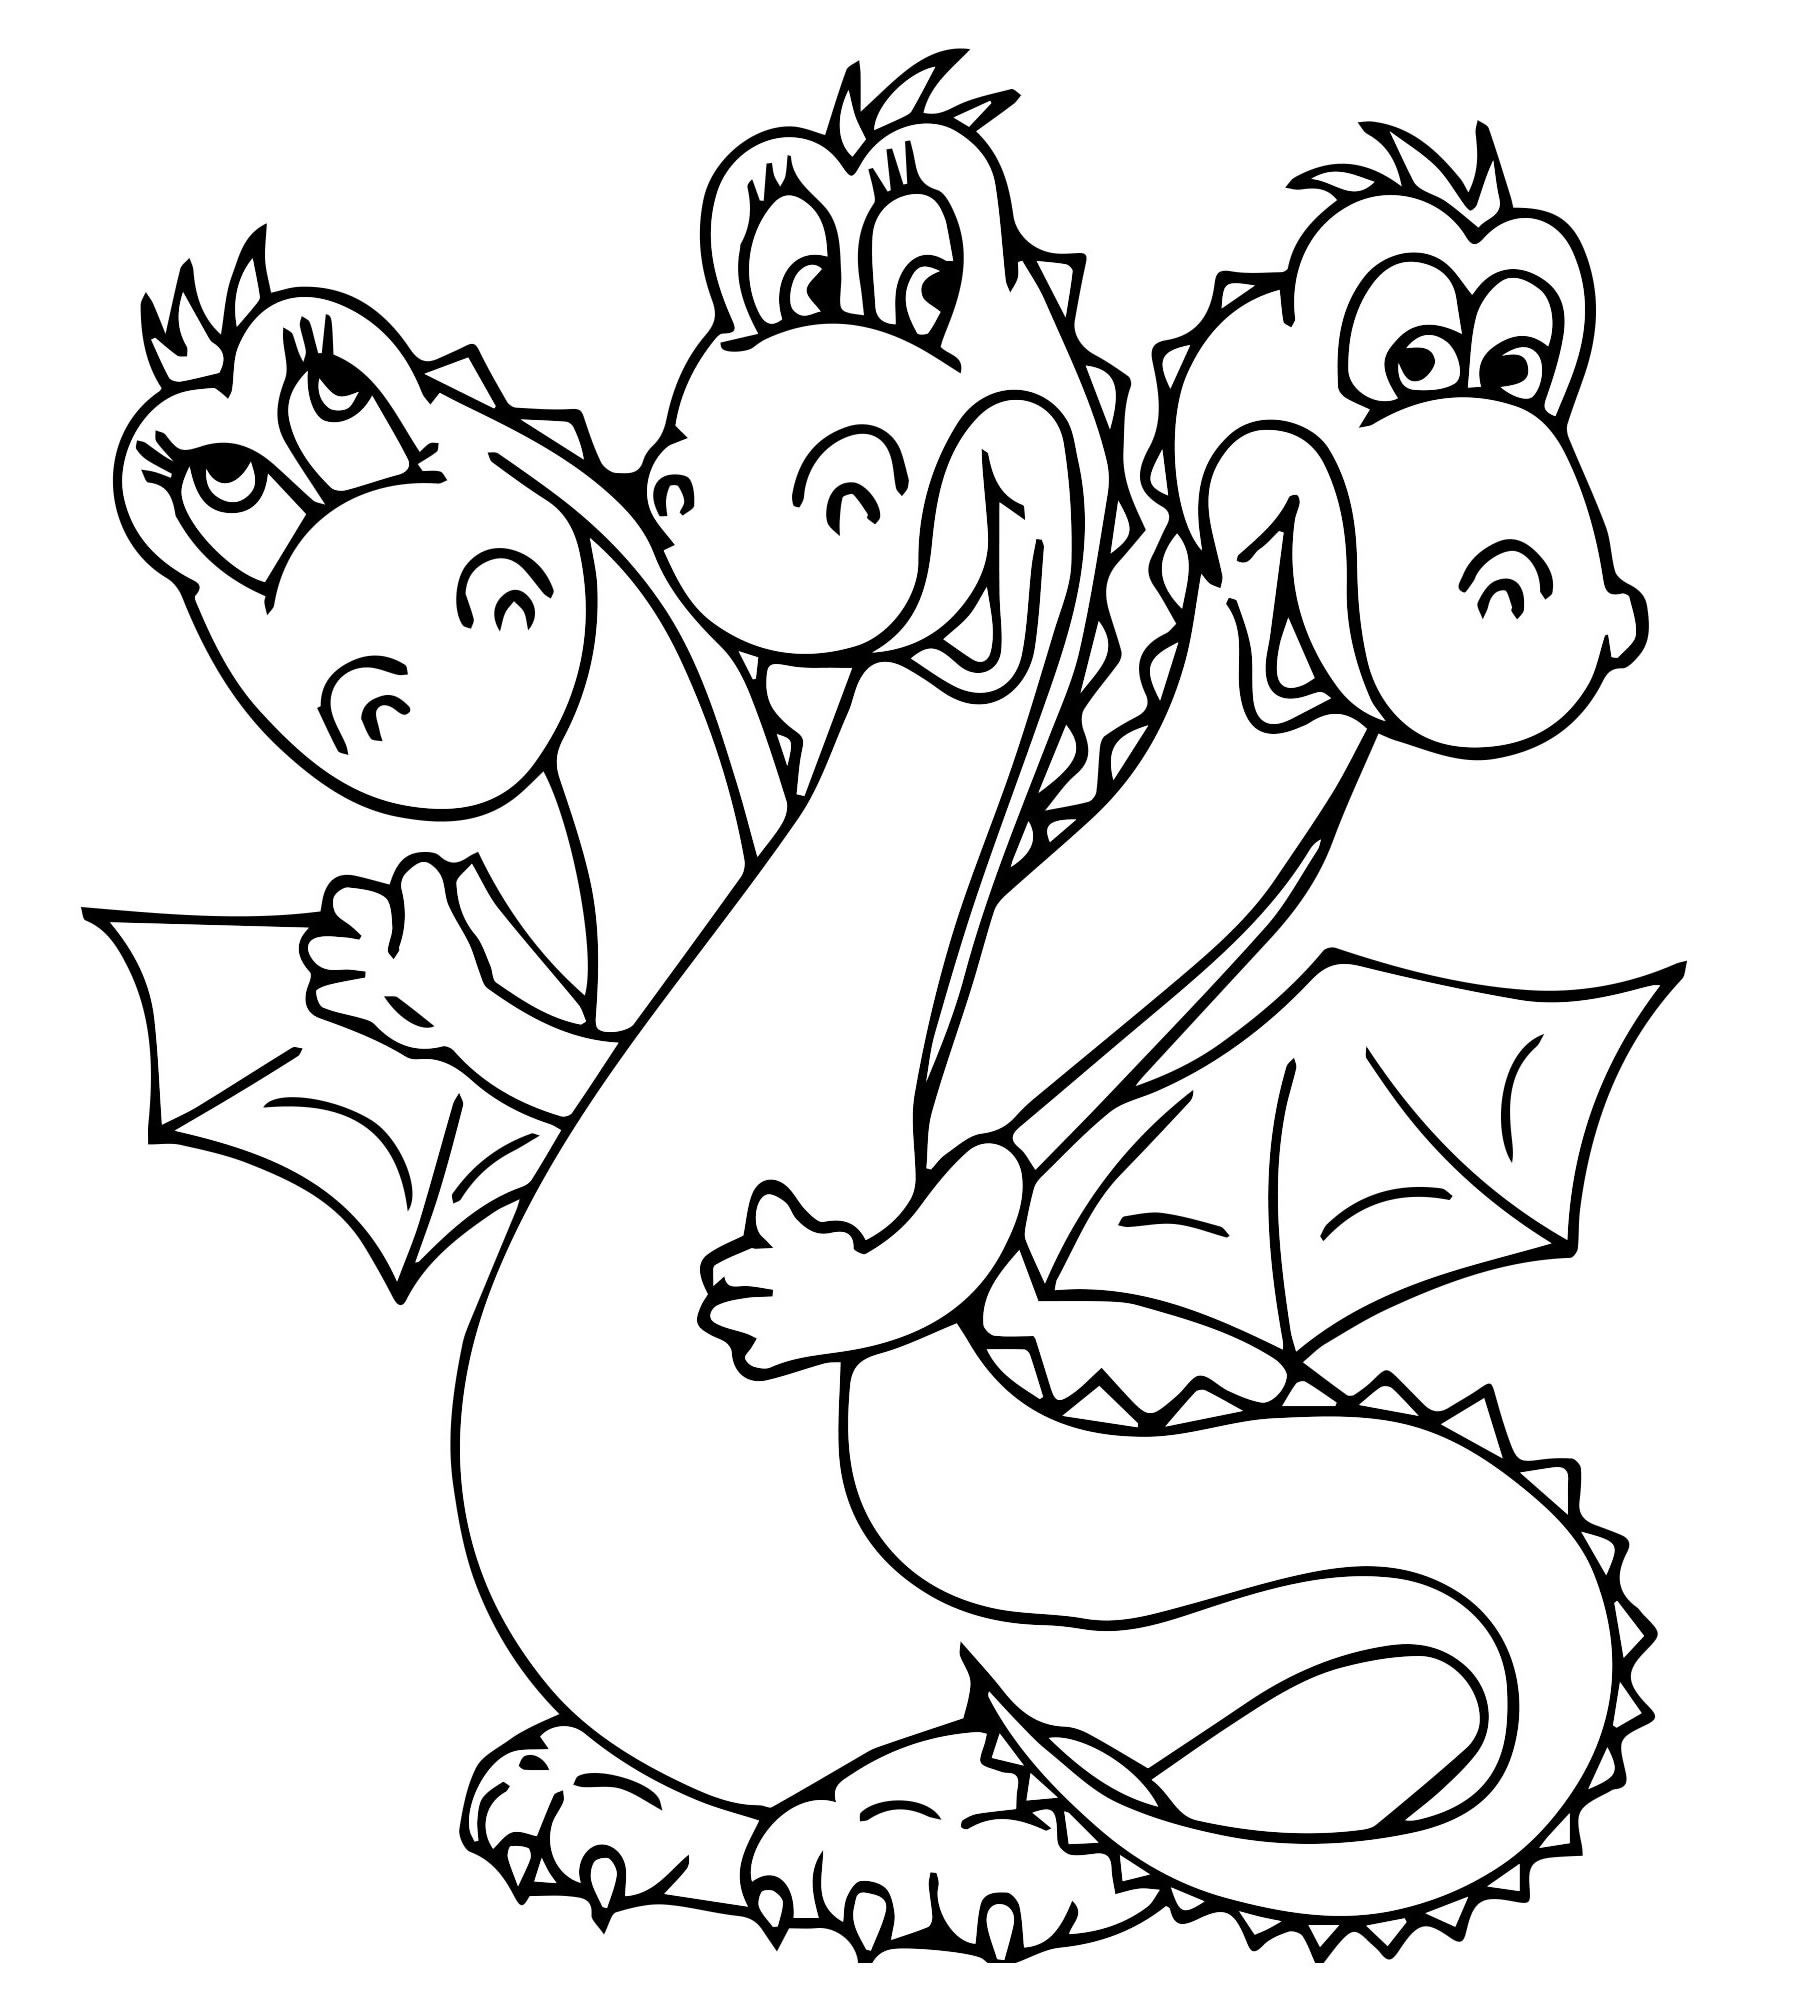 Раскраска змей горыныч трехголовый дракон для детей распечатать